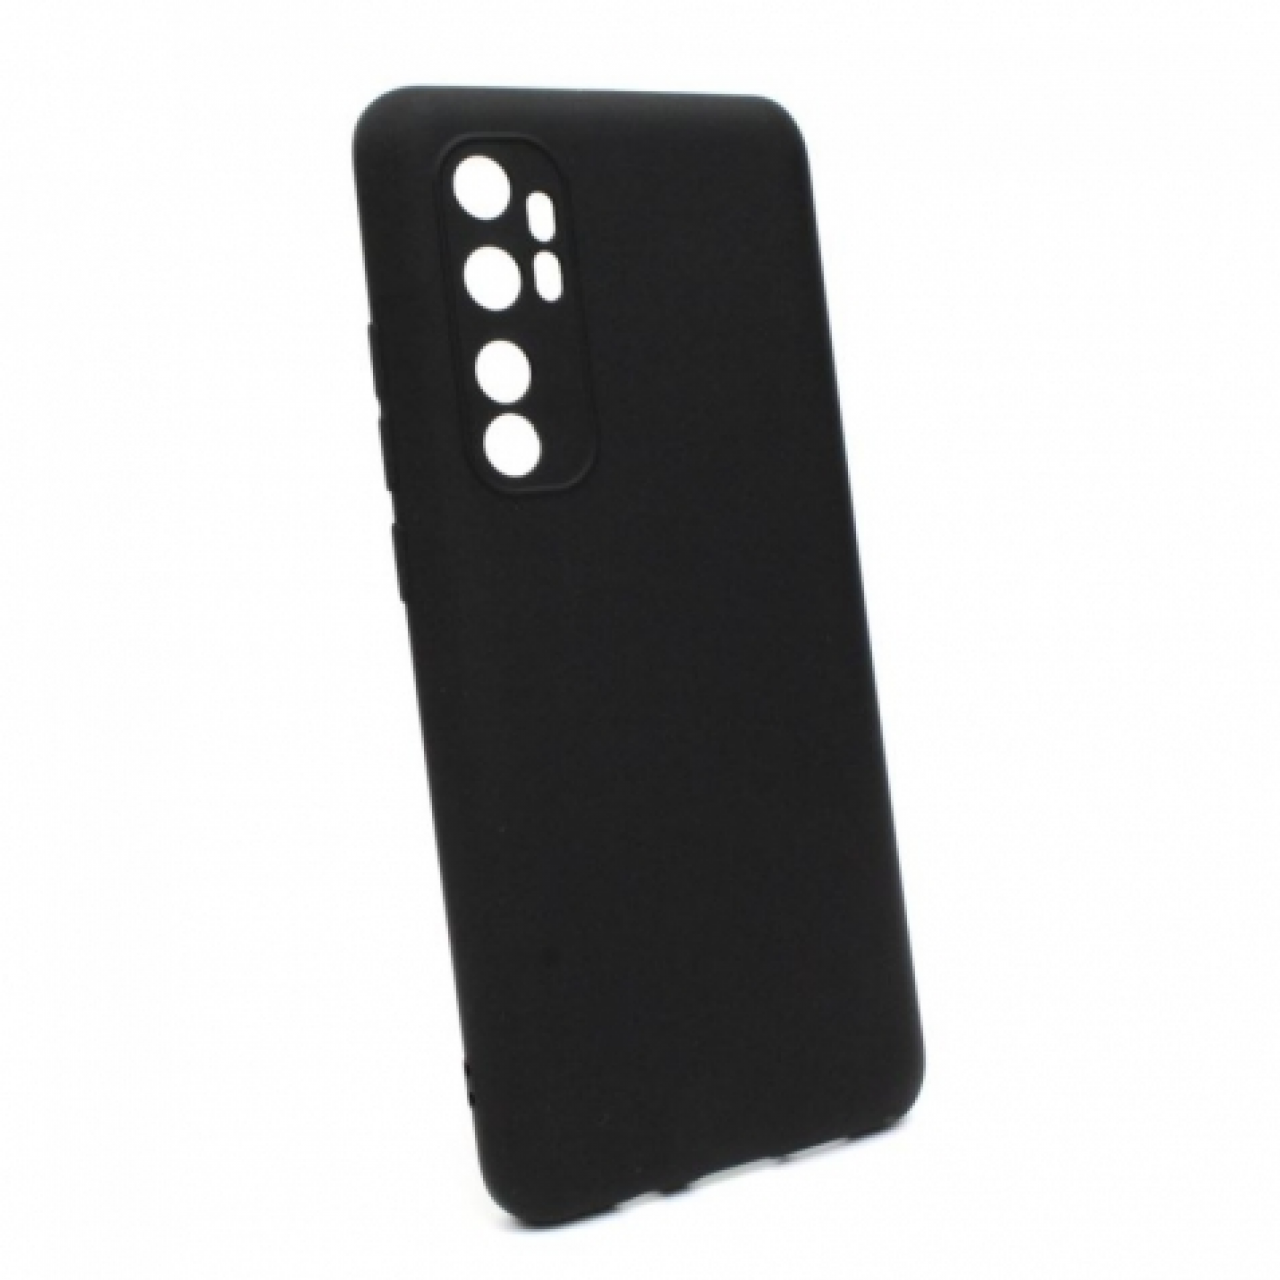 Θήκη Σιλικόνης με Προστασία Κάμερας Xiaomi Mi Note 10 Lite Black - Black Silicone Case